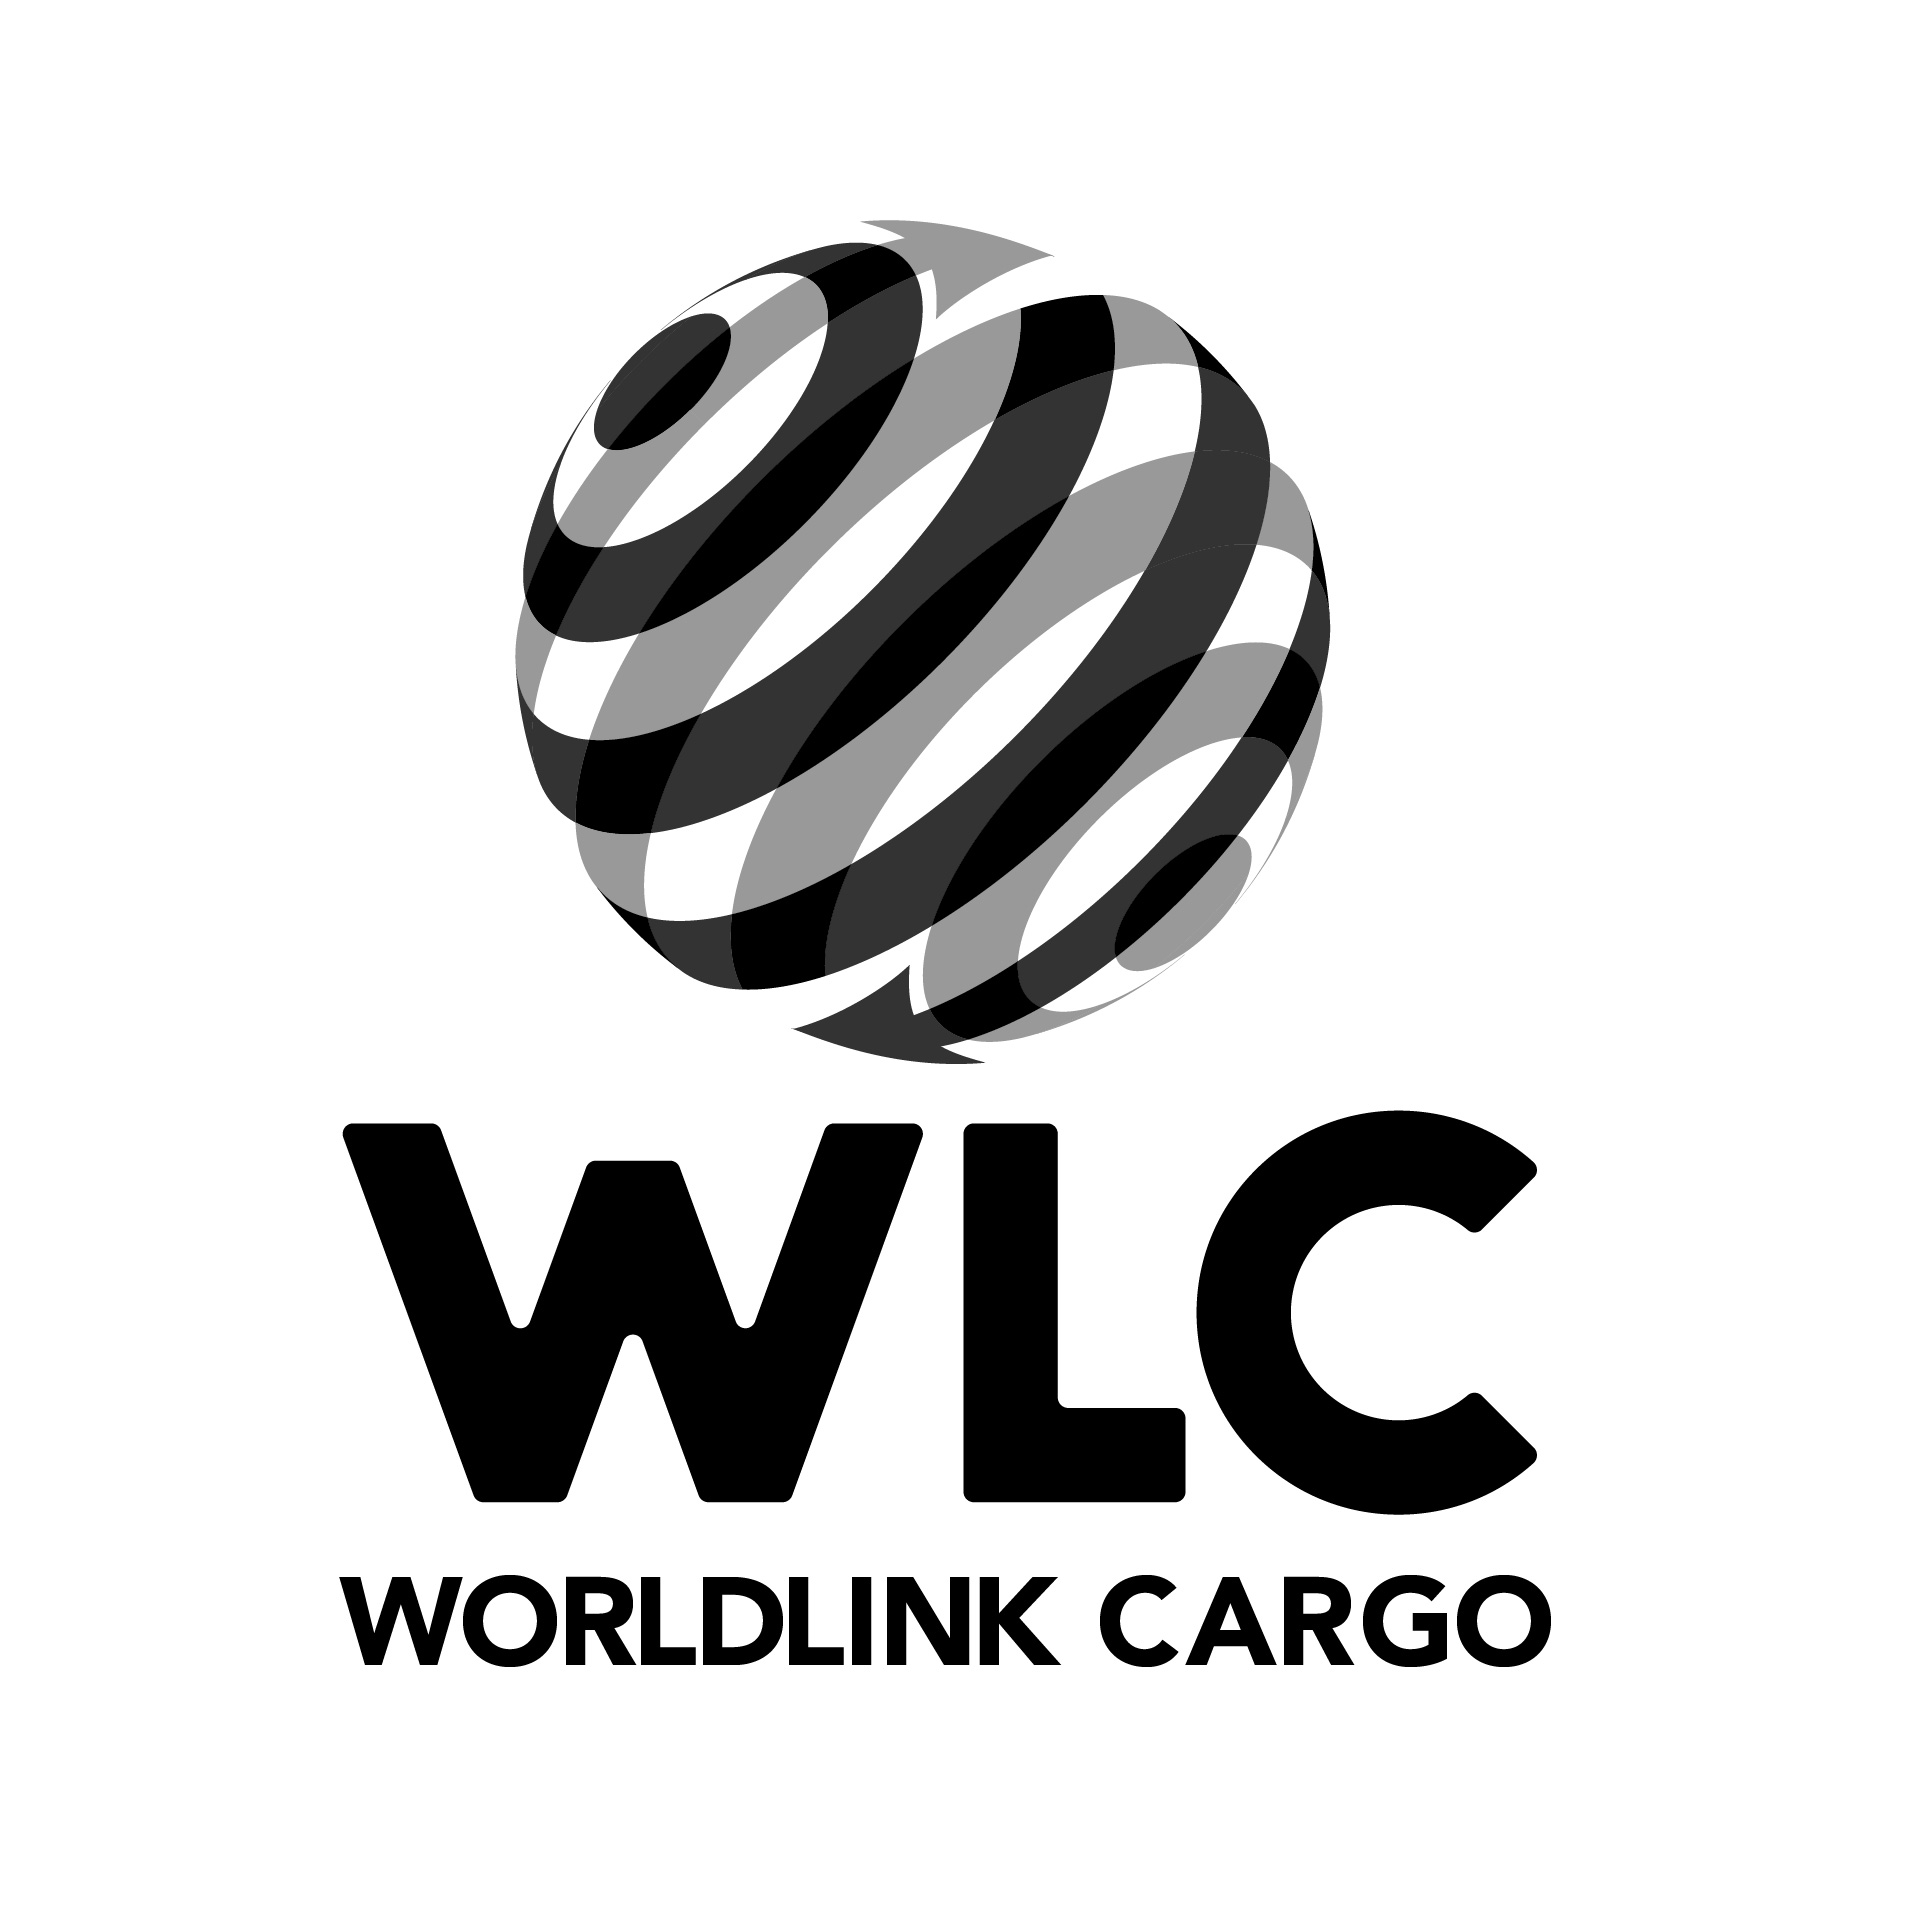 Diseño de Identidad Visual y Logotipo para la marca World Link Cargo